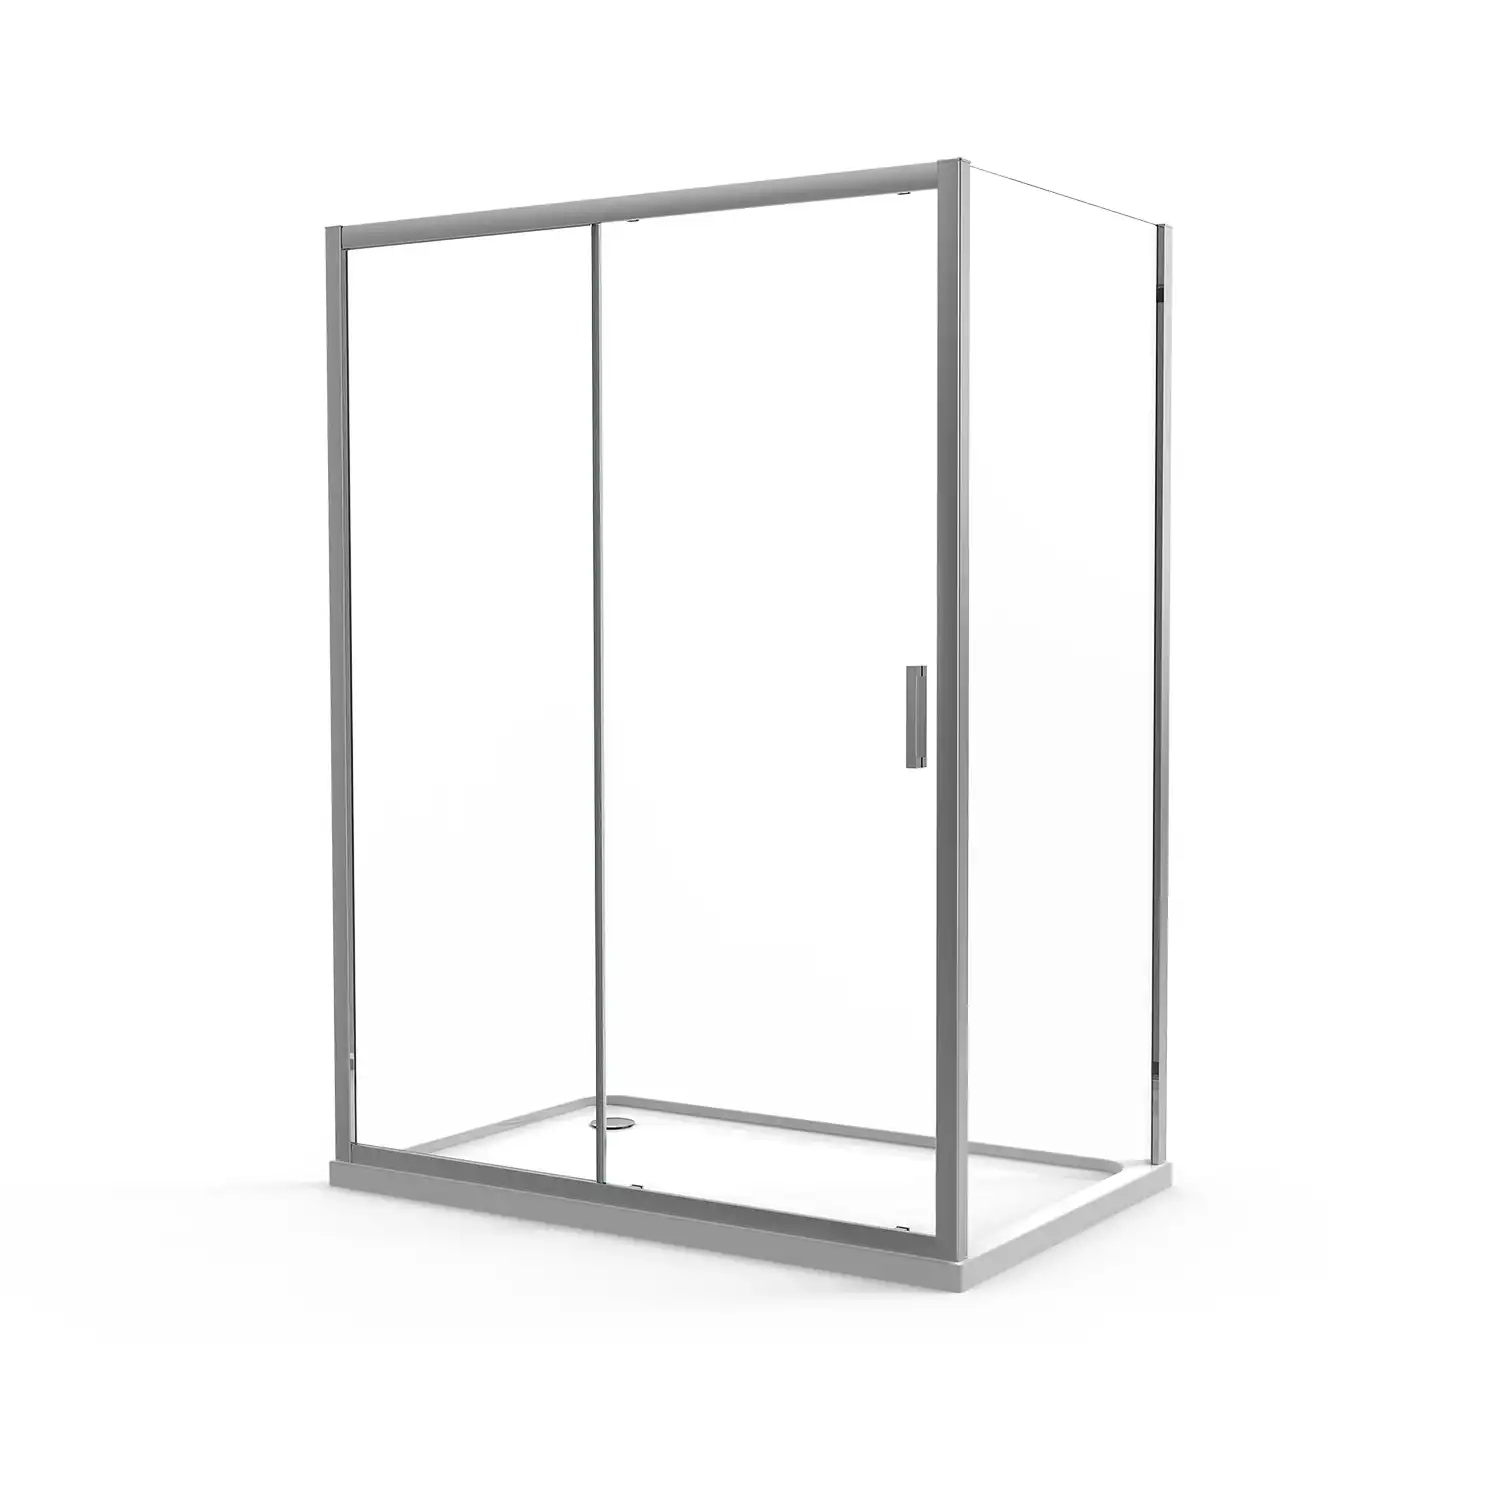 Box doccia angolare 70x120 cm in cristallo trasparente, con apertura 1 anta scorrevole e parete fissa | Vinagra